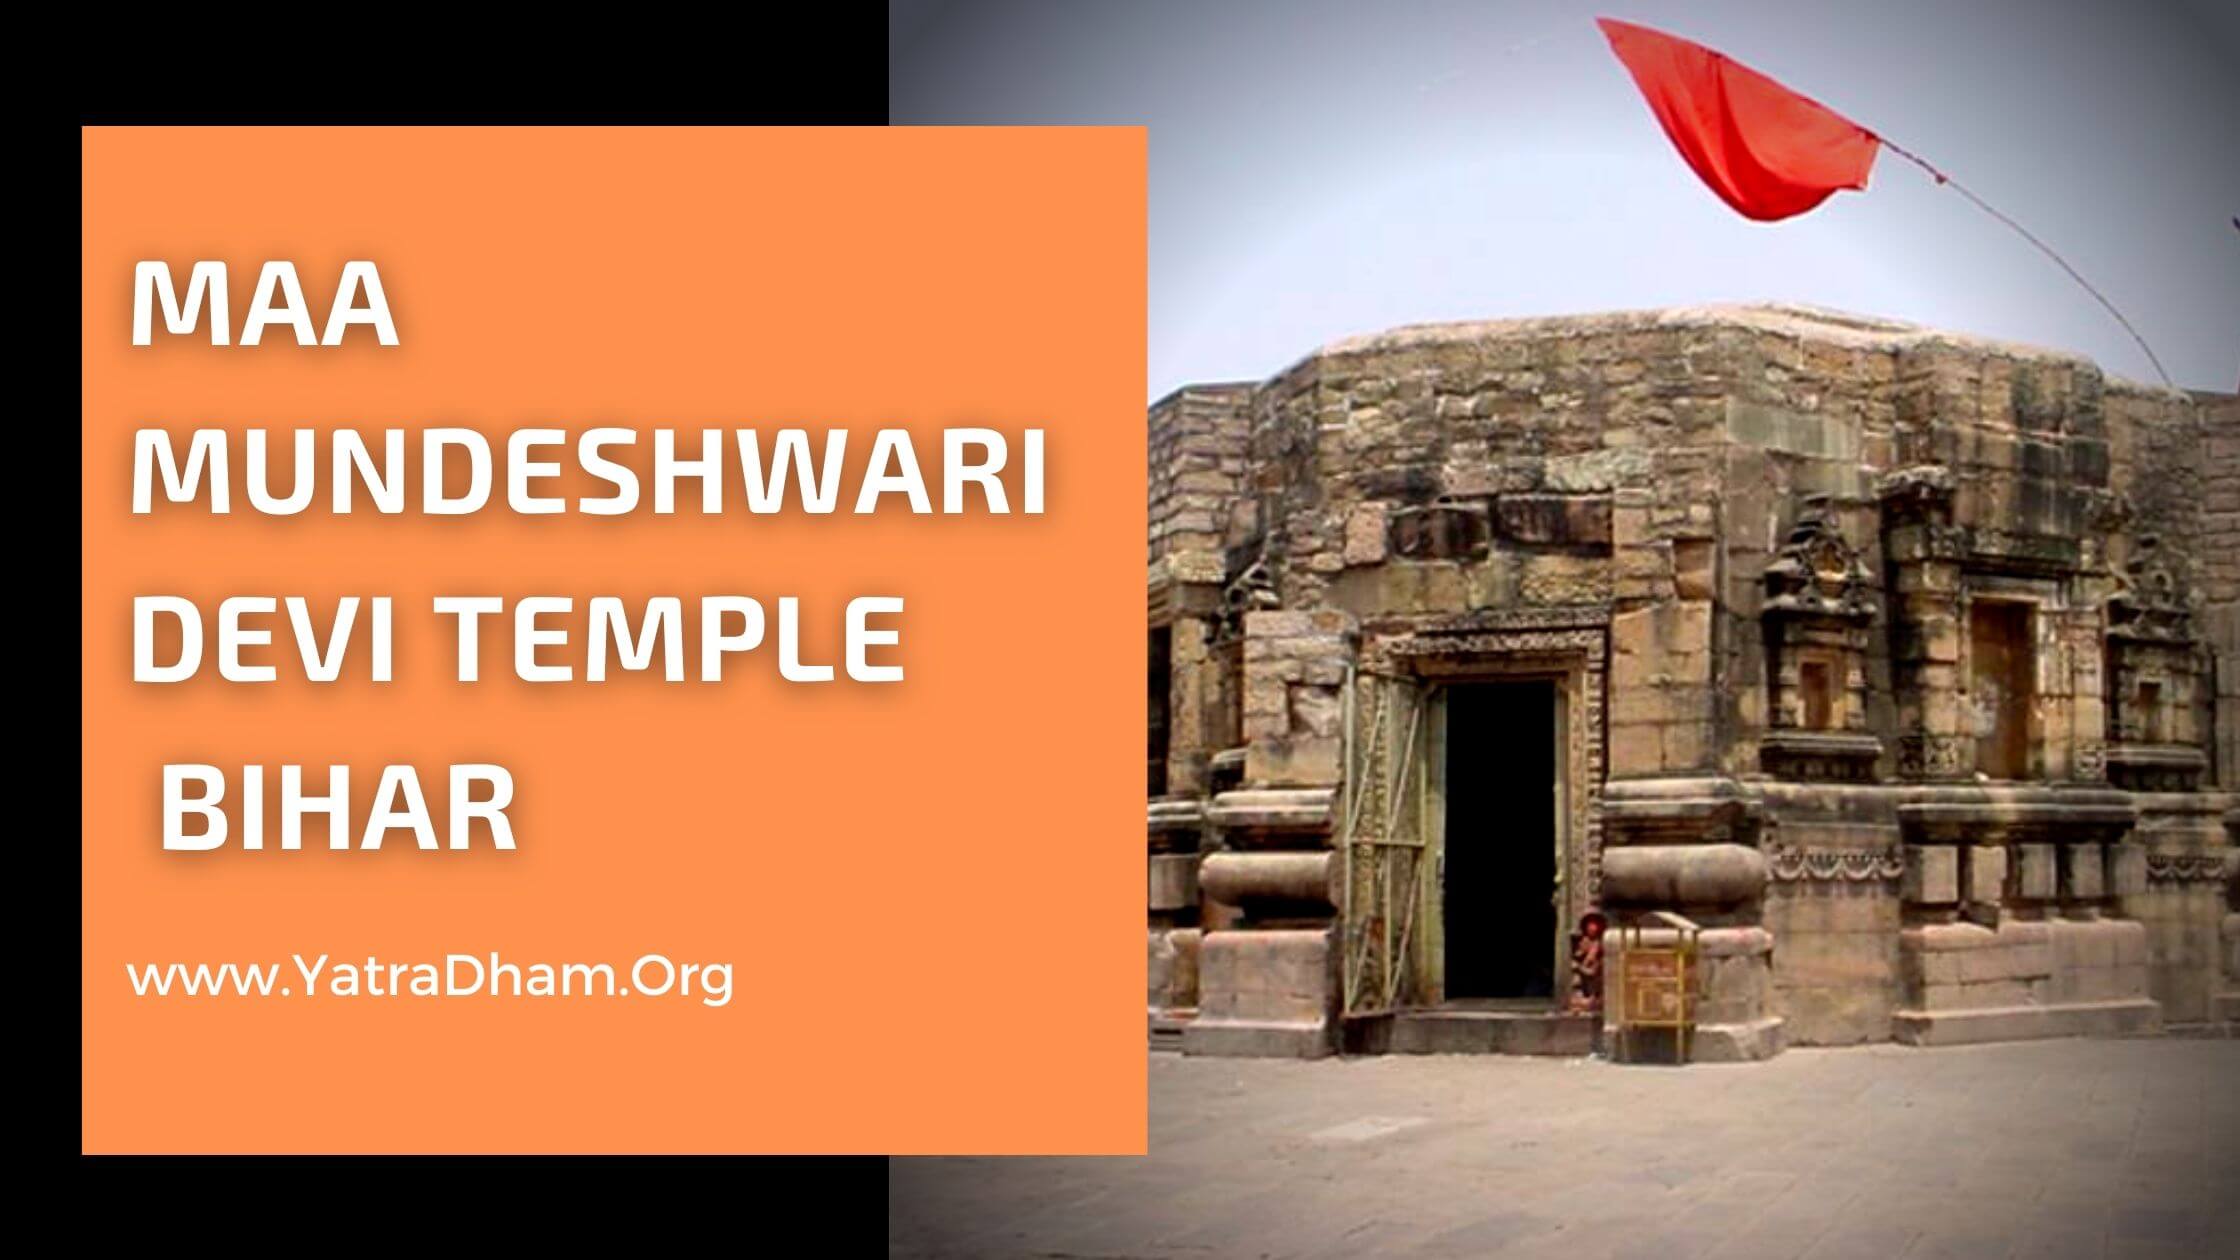 Maa Mundeshwari Devi Temple Bihar